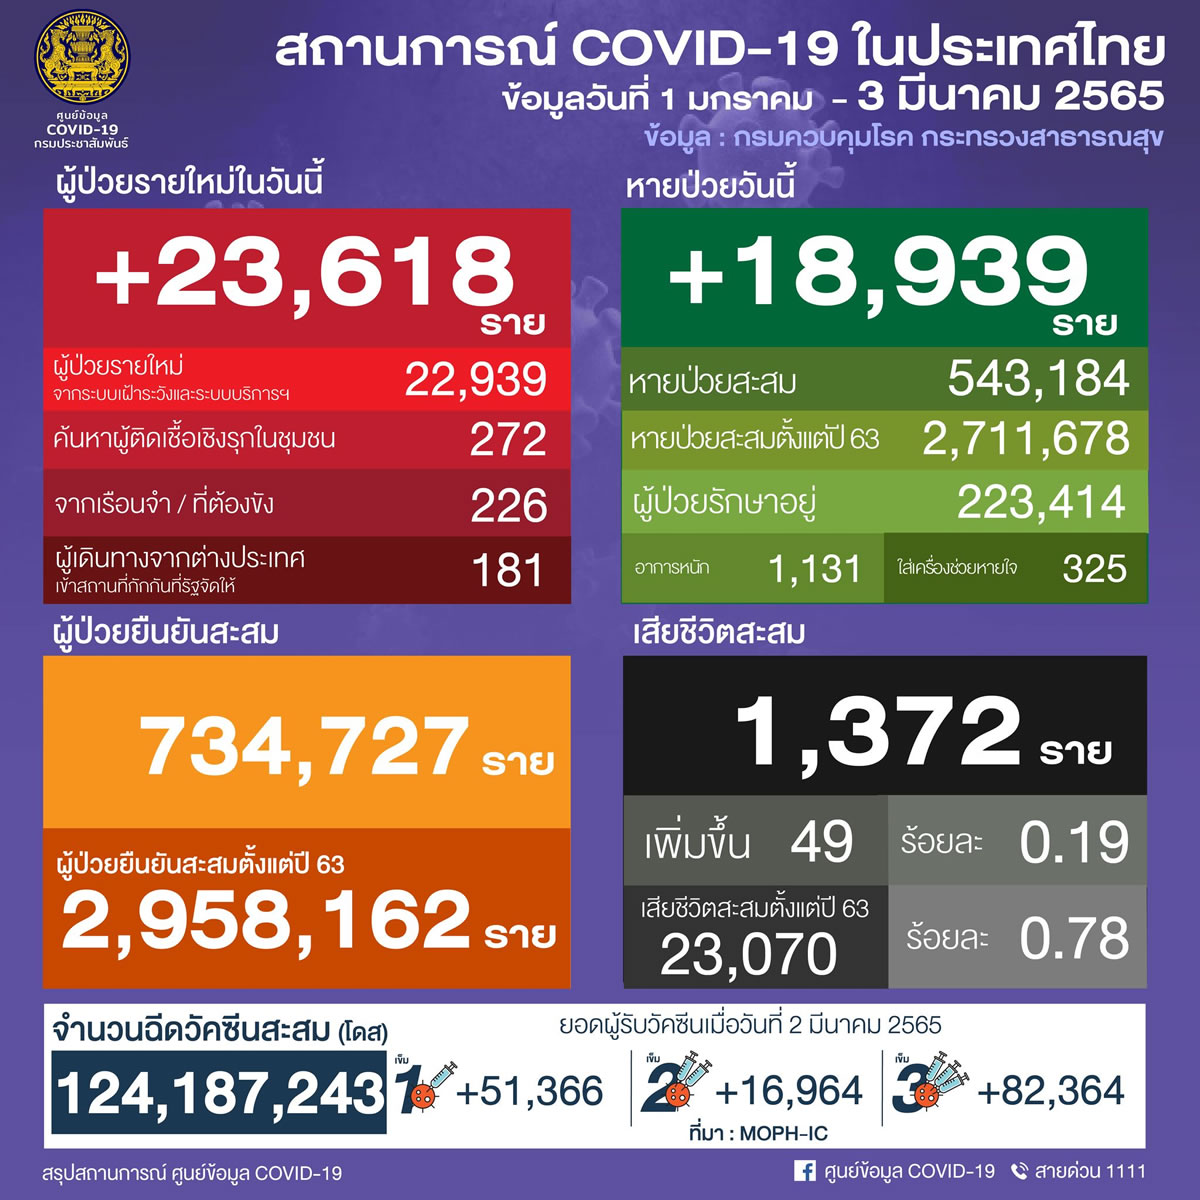 タイ 23,618人陽性 49人死亡／バンコク 2,779人陽性／チョンブリ 1,217人陽性／ナコンシータマラート 959人陽性［2022年3月3日発表］